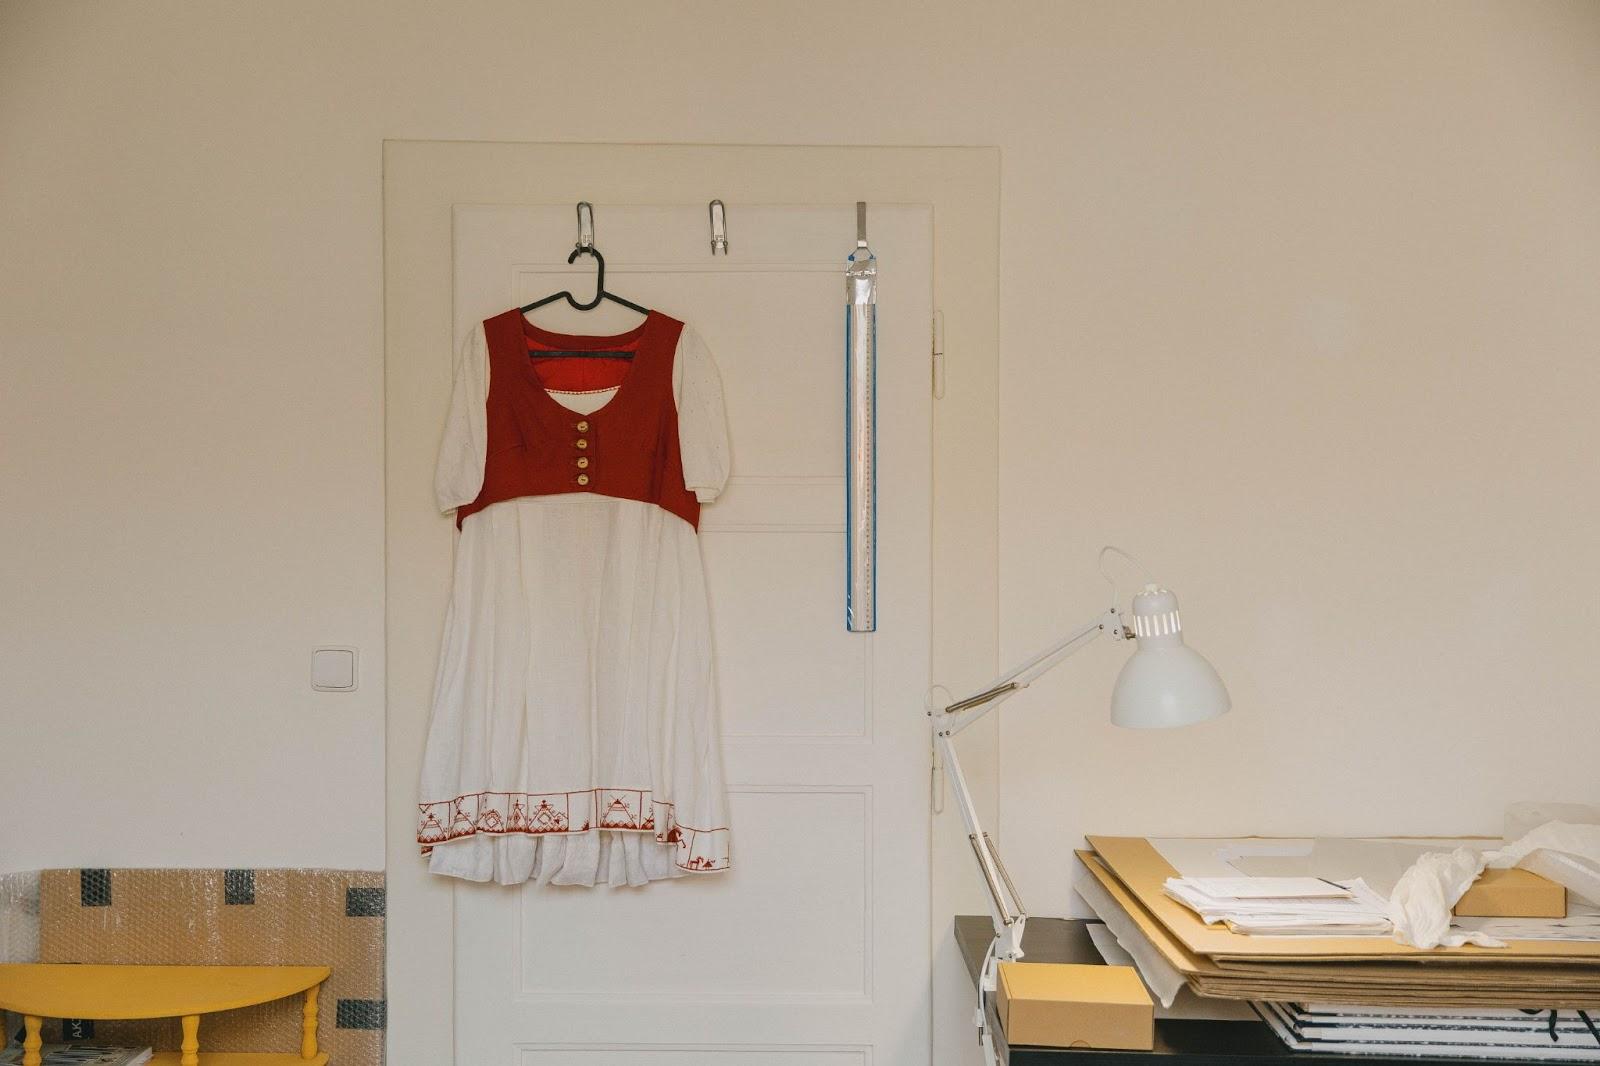 Vyšívané šaty z projektu Ženokol v ateliéru Rufiny Bazlové. FOTO: Adam Mráček